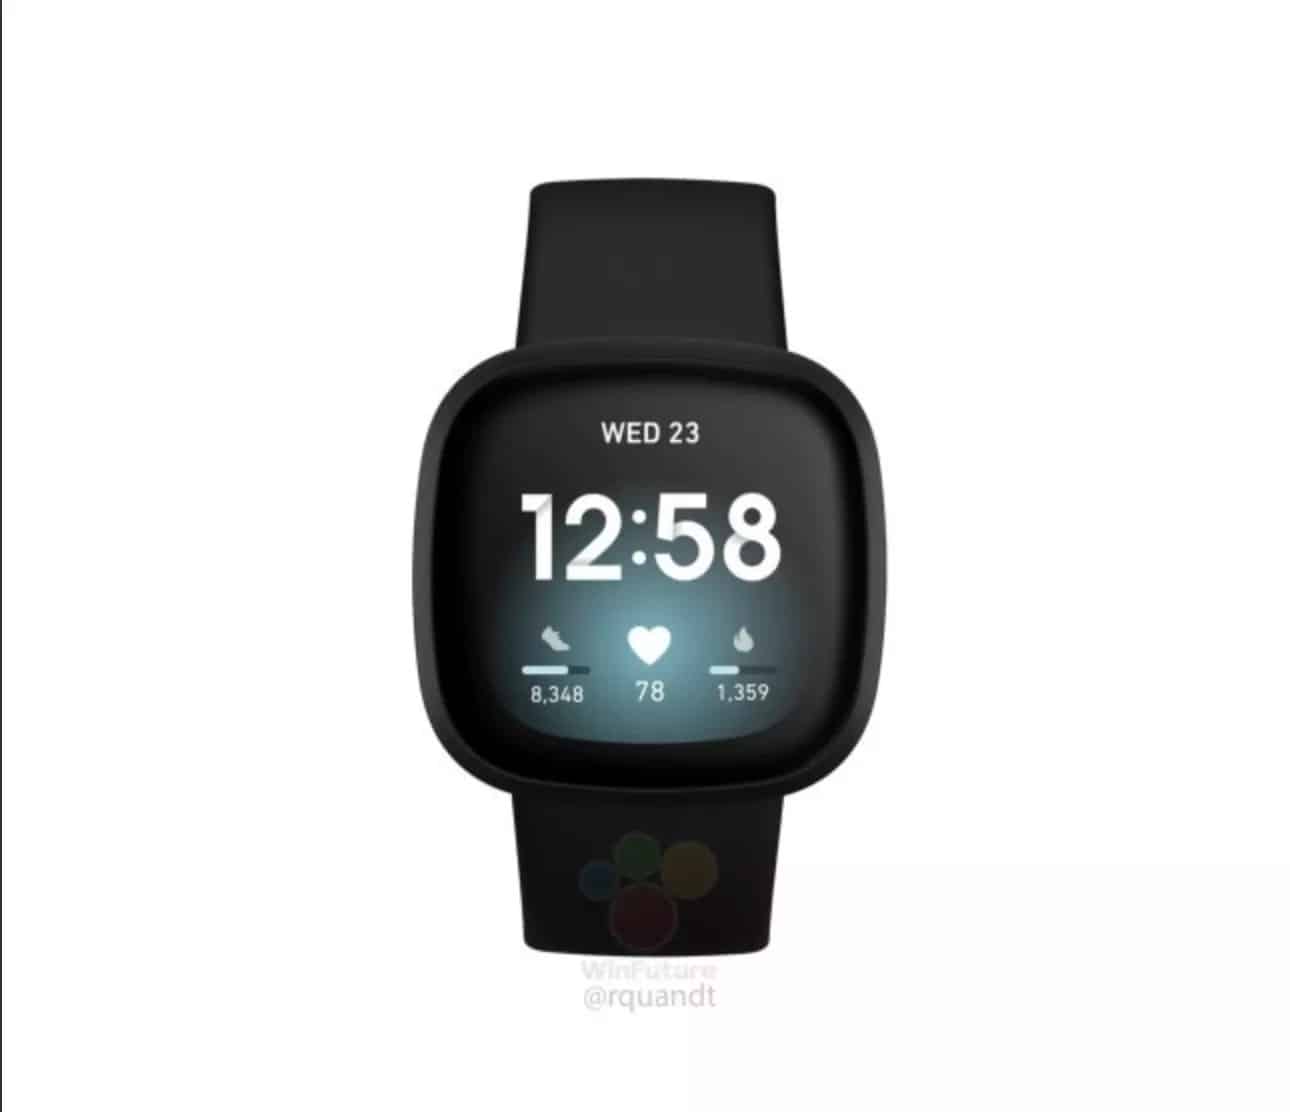 Yakında beklenen Fitbit Versa 3 ve Fitbit Sense akıllı saatlerine ait fotoğraflar sızdı